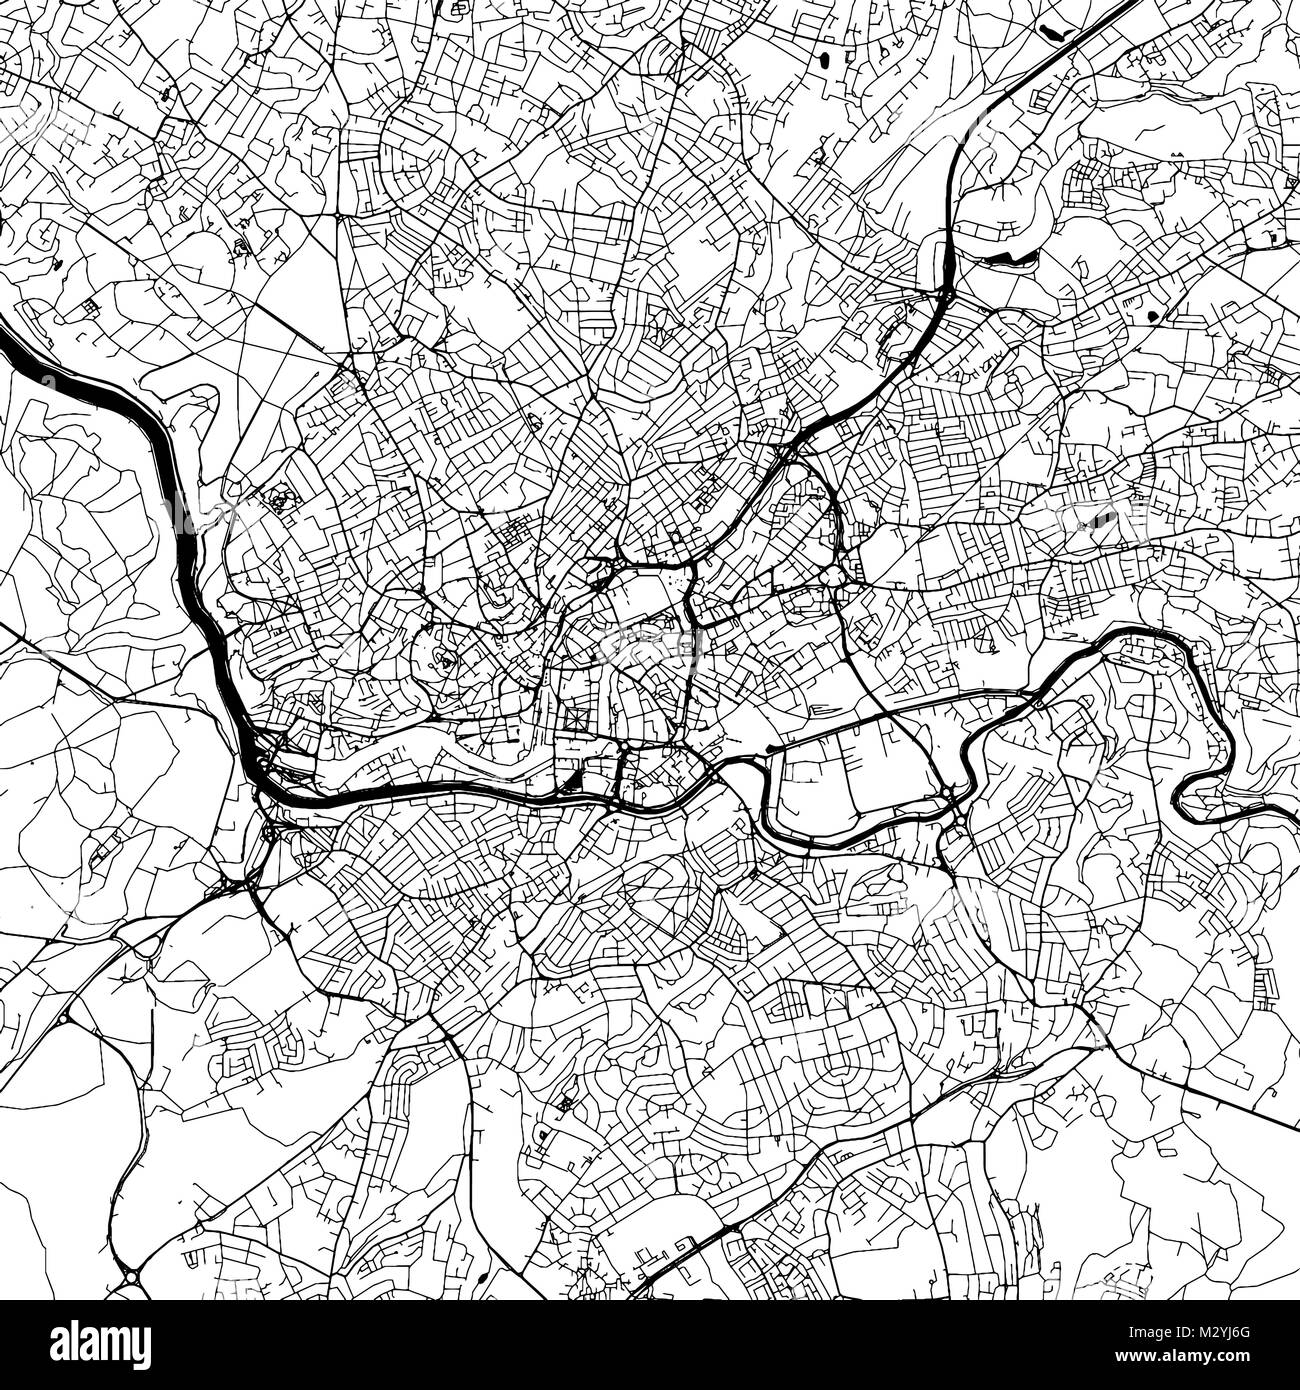 Le centre-ville de Bristol Carte vectorielle, Version monochrome oevre Contour pour l'infographie, l'arrière-plan des rues et voies d'eau noire Illustration de Vecteur